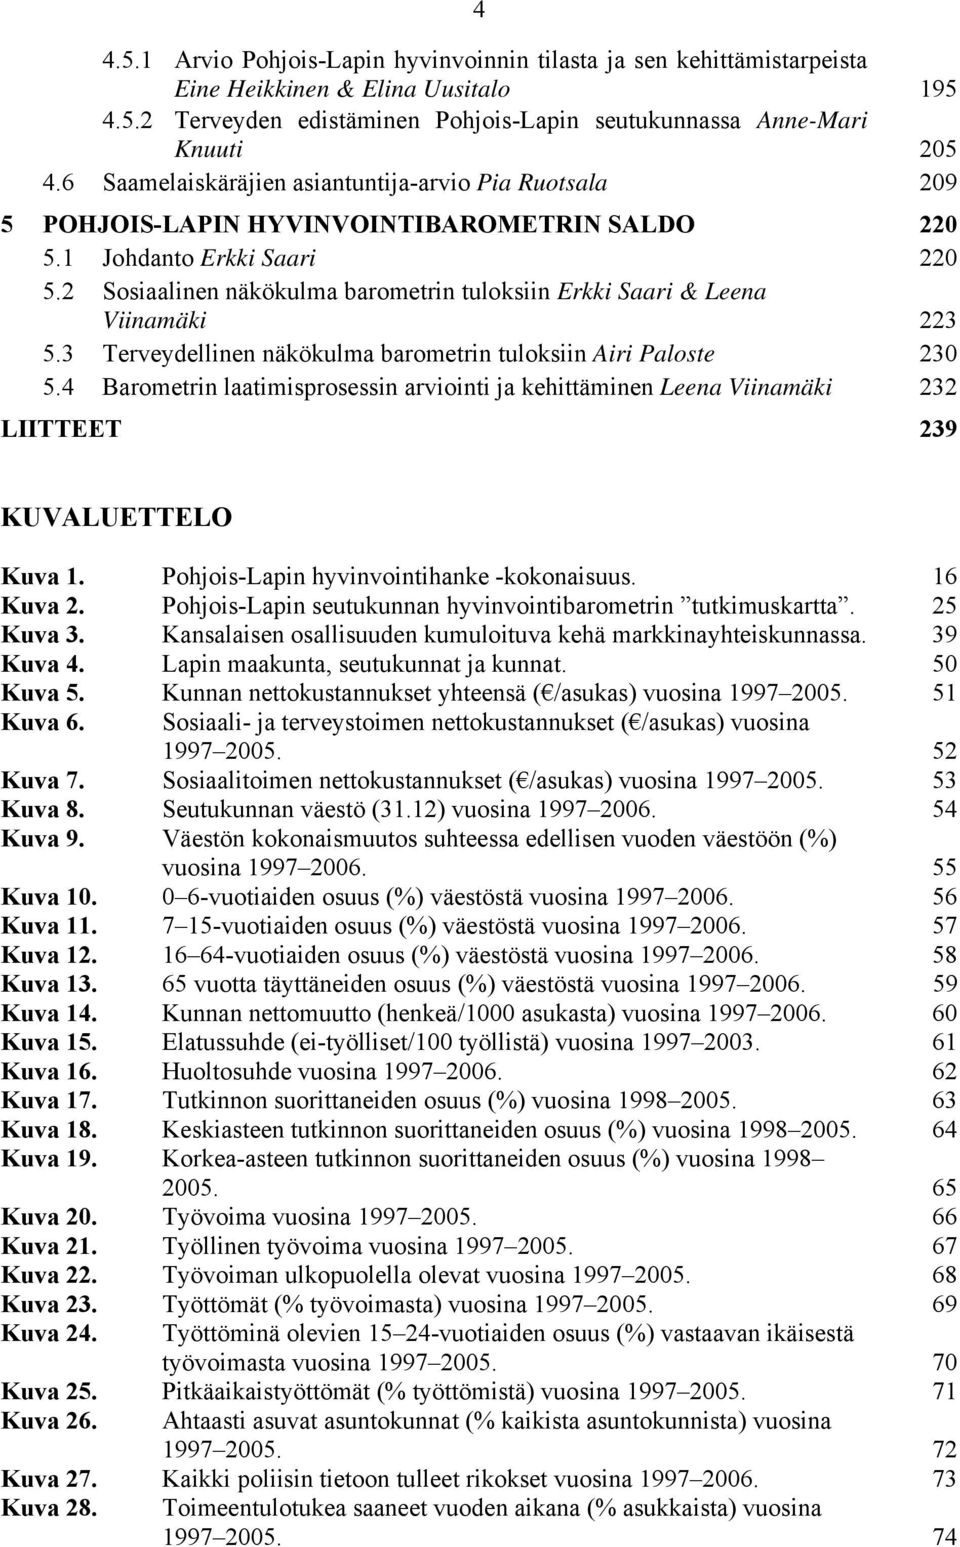 2 Sosiaalinen näkökulma barometrin tuloksiin Erkki Saari & Leena Viinamäki 223 5.3 Terveydellinen näkökulma barometrin tuloksiin Airi Paloste 23 5.